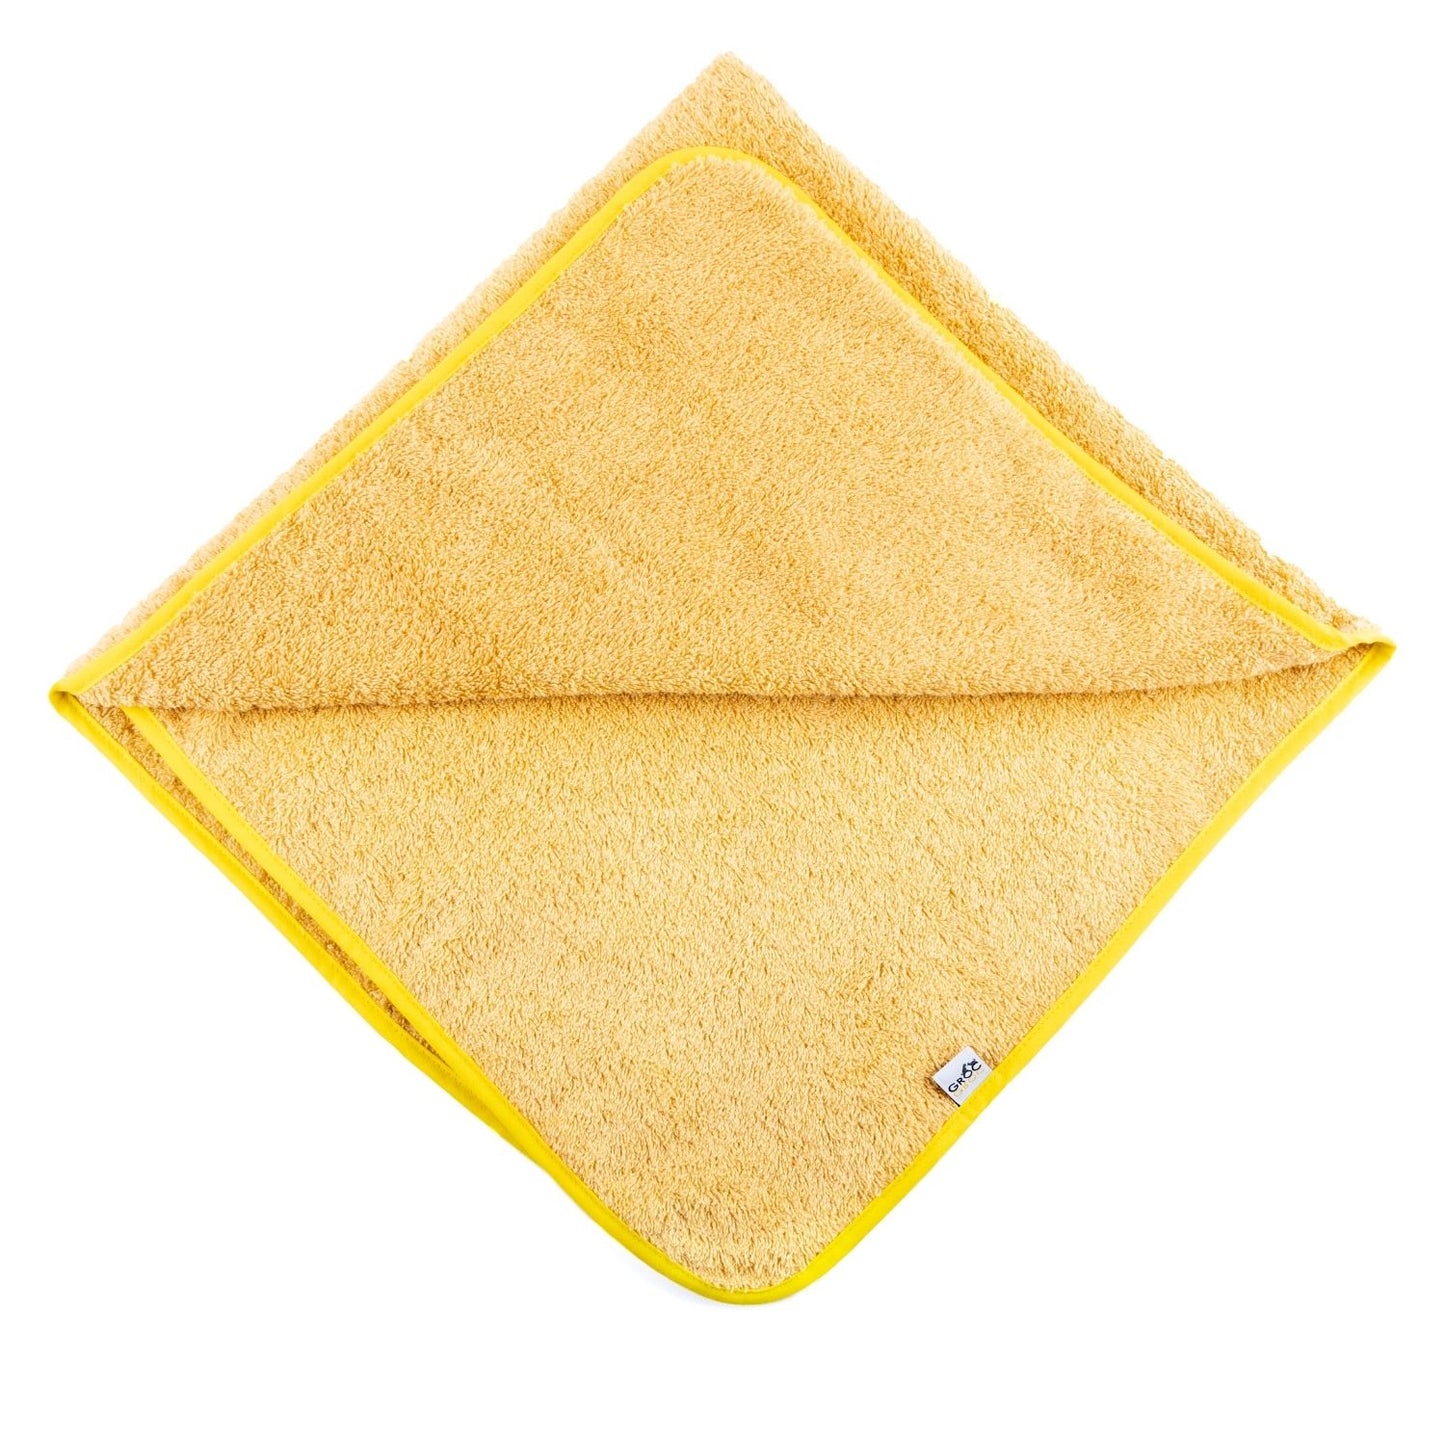 GROC GROC handgefertigtes Handtuch für Hunde | Hundehandtuch | Badecape aus Frottee | Baumwolle